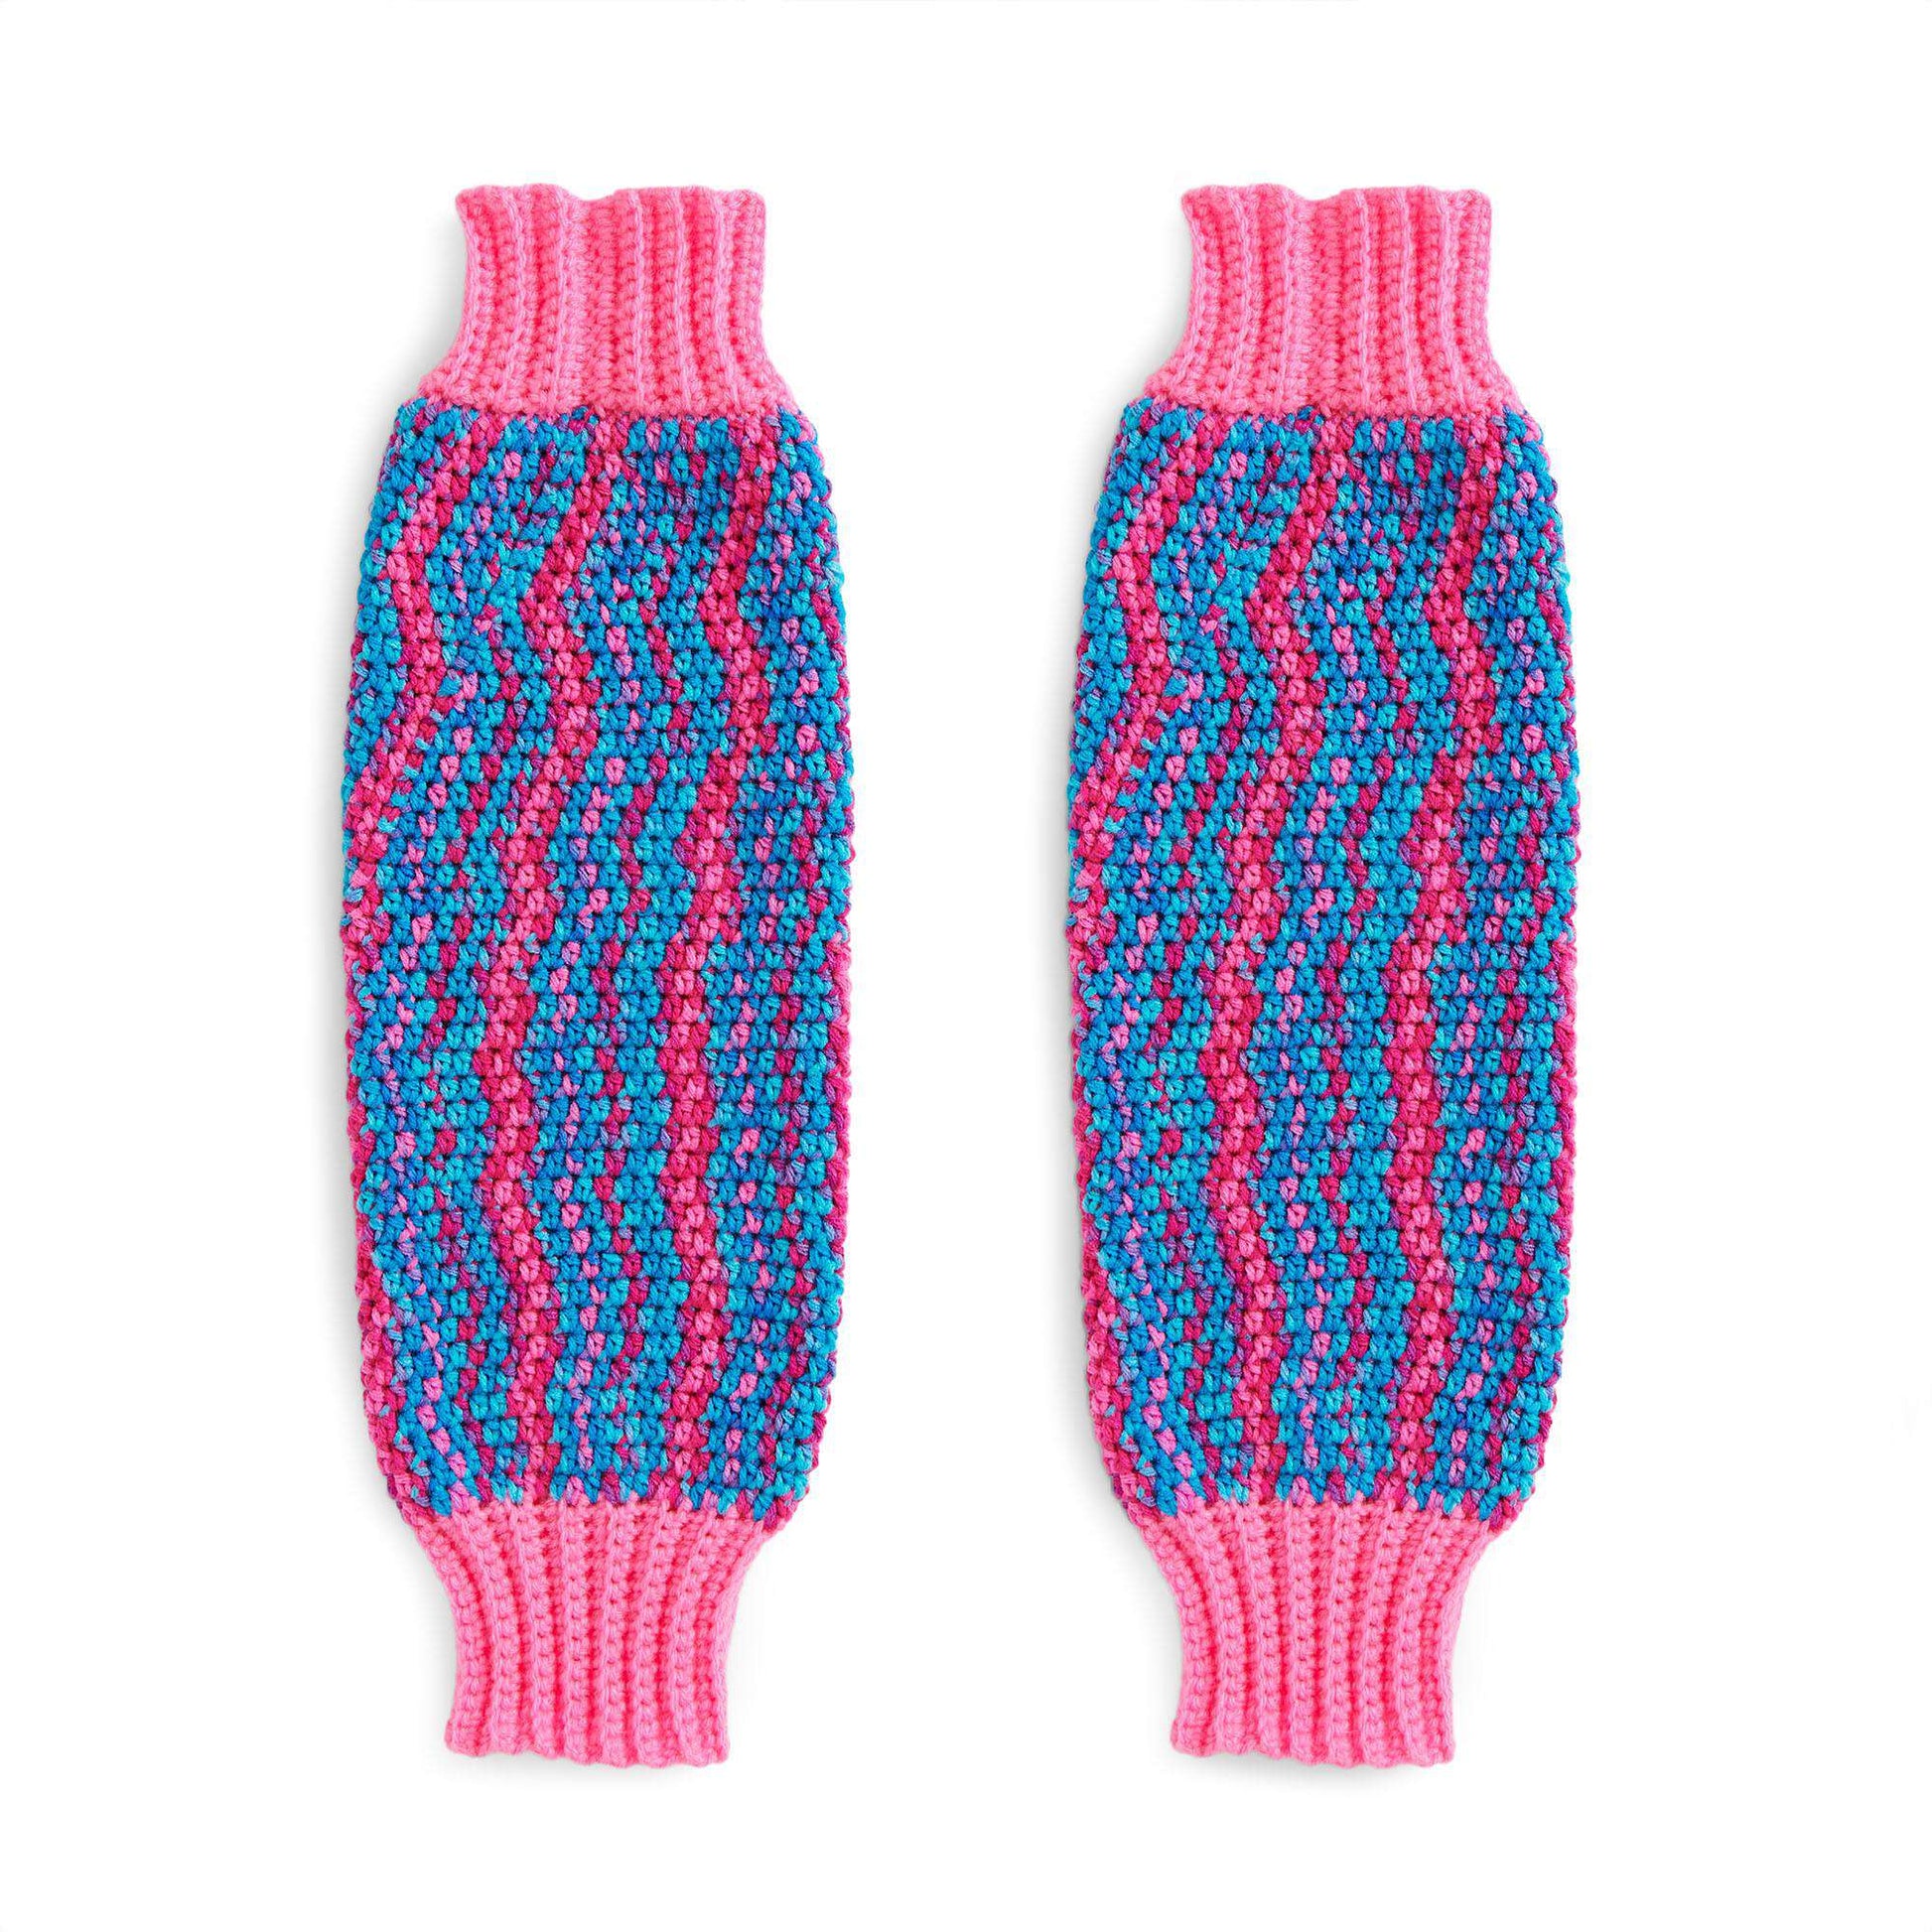 Red Heart Crochet Stripes Arm Warmers Pattern